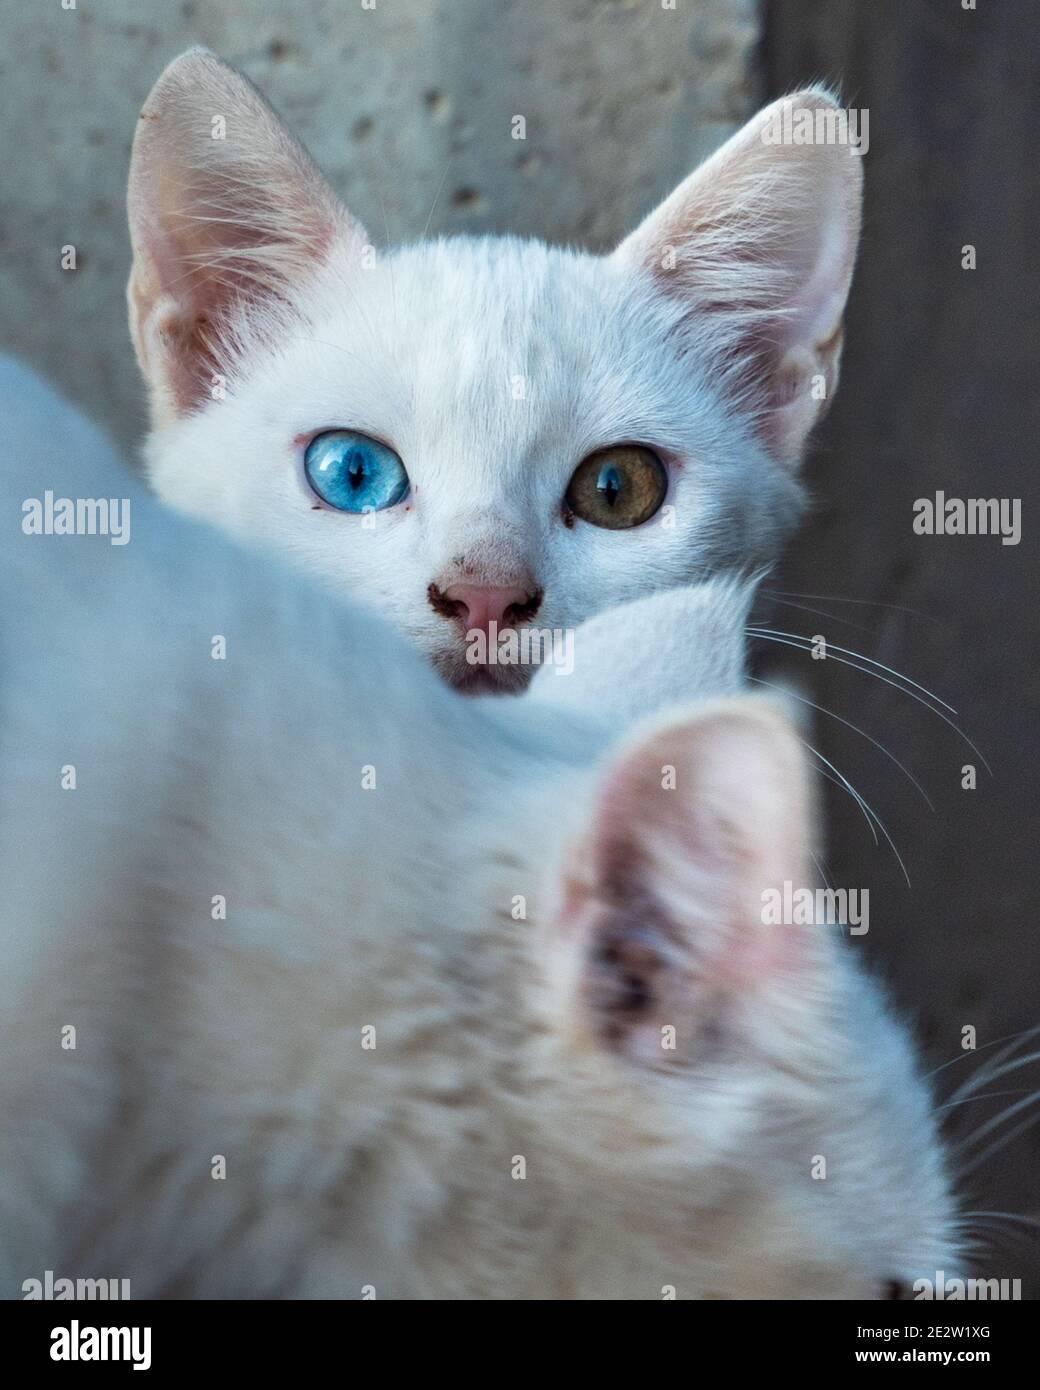 Fuoco selettivo del gattino bianco del gatto con gli occhi differenti guardandosi intorno occultandosi attentamente dietro la sua madre. Gattino dall'occhio dispari. Cat con 2 colori diversi Foto Stock